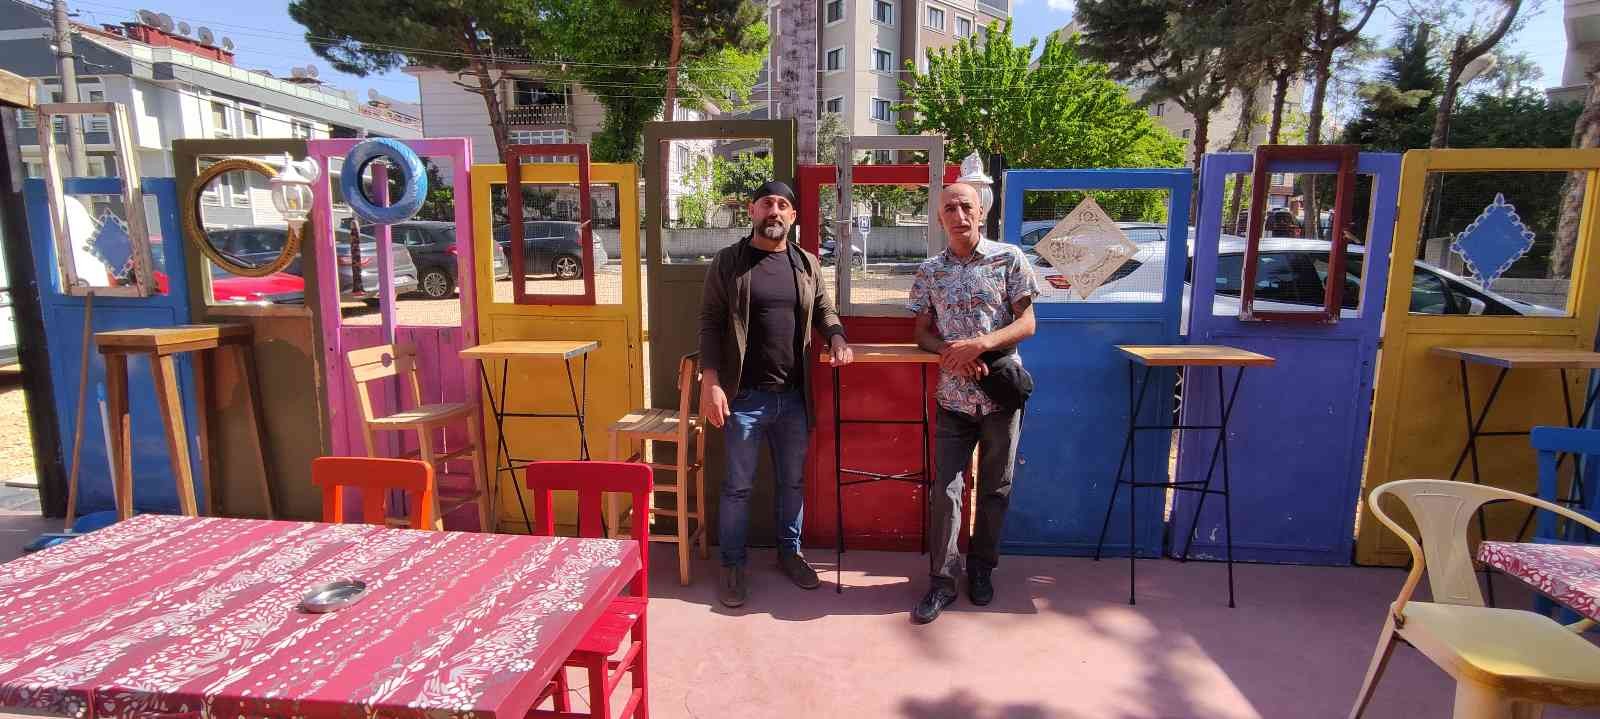 Bursa’da 2 arkadaş 7 milyon liraya açtıkları kafenin masa, sandalye ve dekorasyonunu geri dönüşüm malzemelerinden yaptı. 3 yıl önce kafe açmaya ...